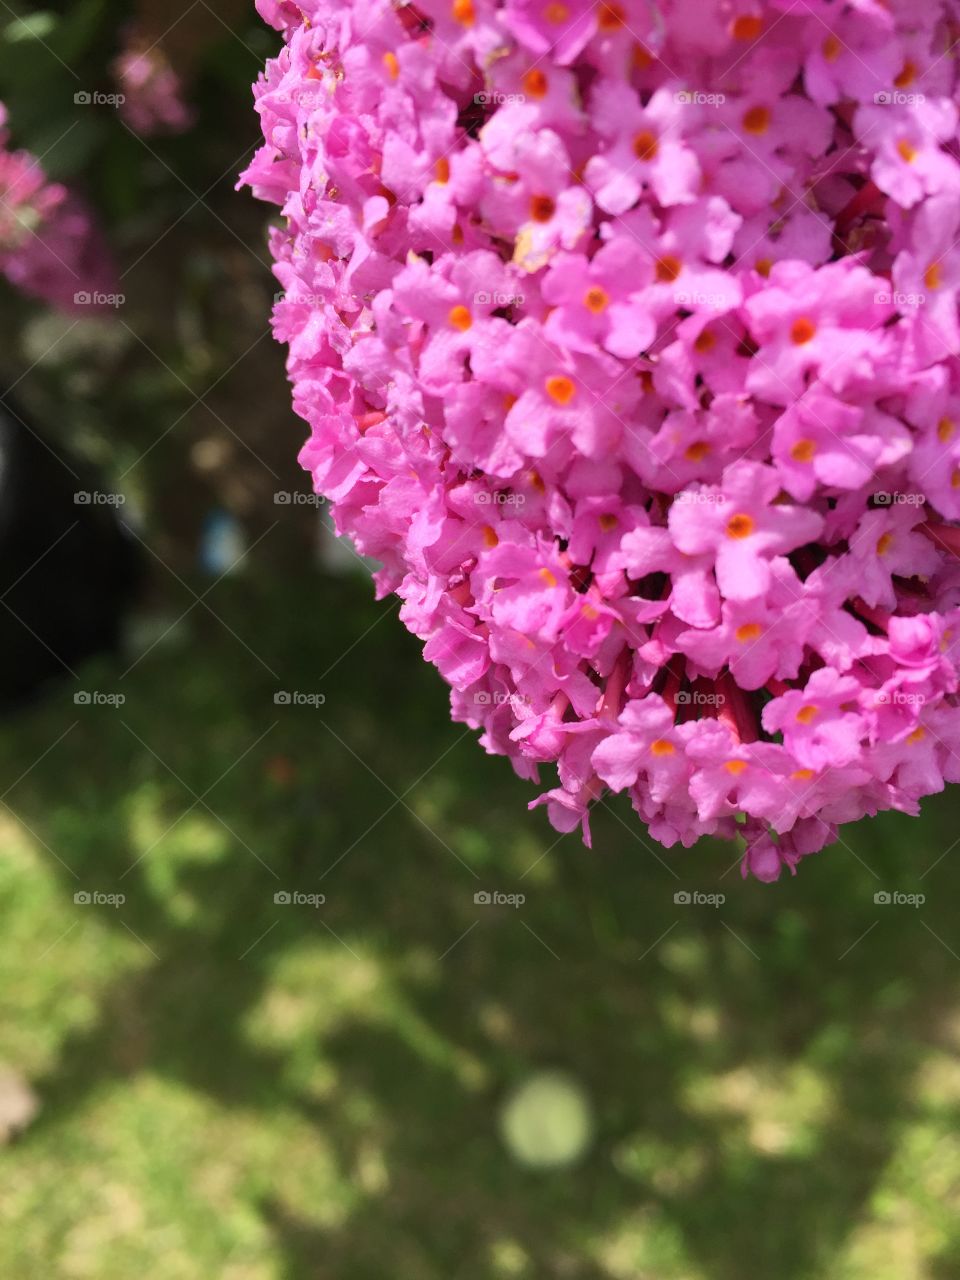 Pink Flower. Pink garden flower